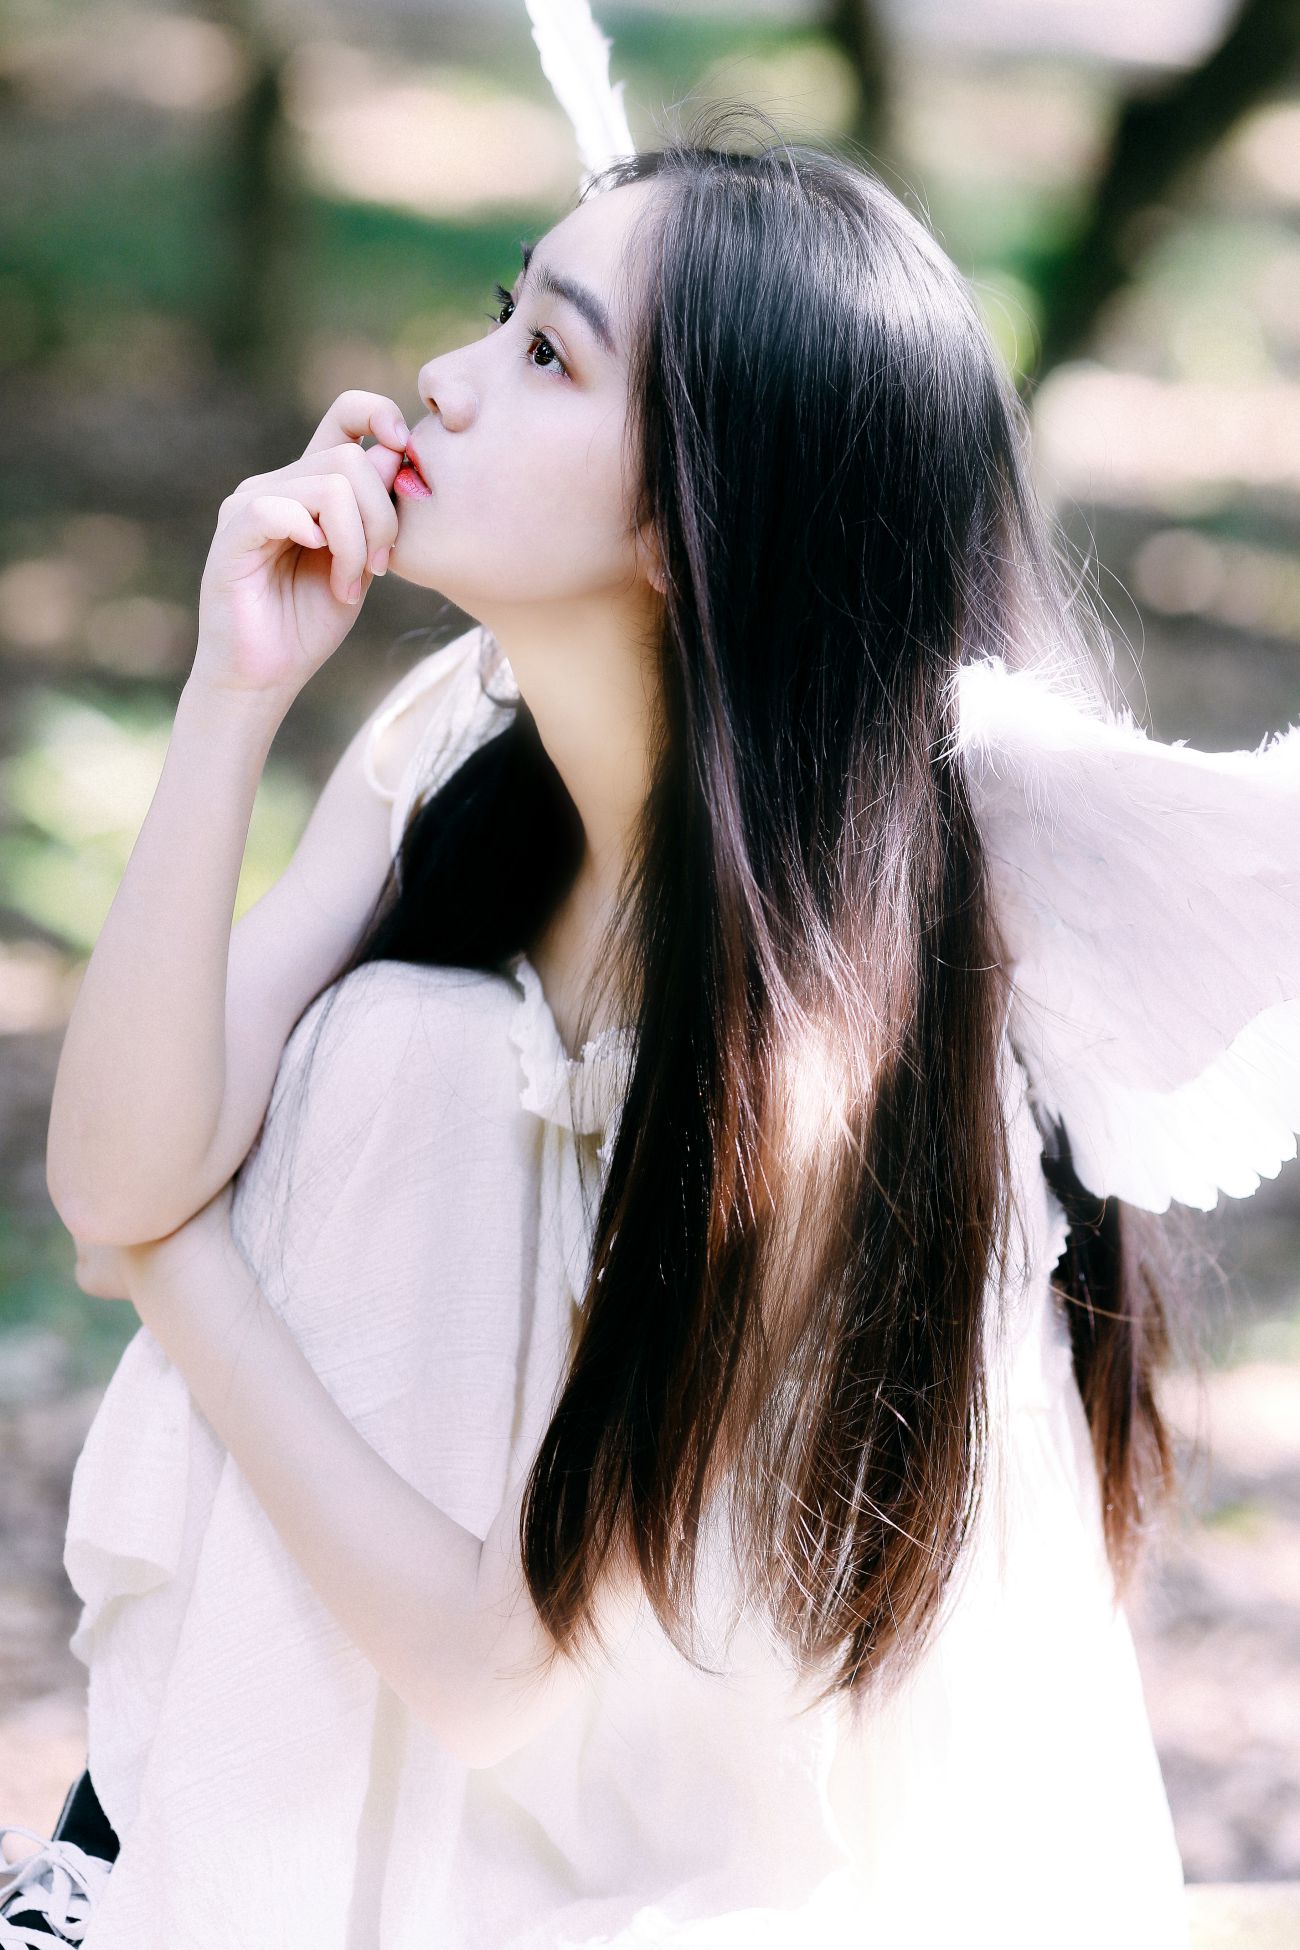 YITUYU艺图语模特唯美写真2022.01.08期挥着翅膀的女孩 棒棒橙 (9)